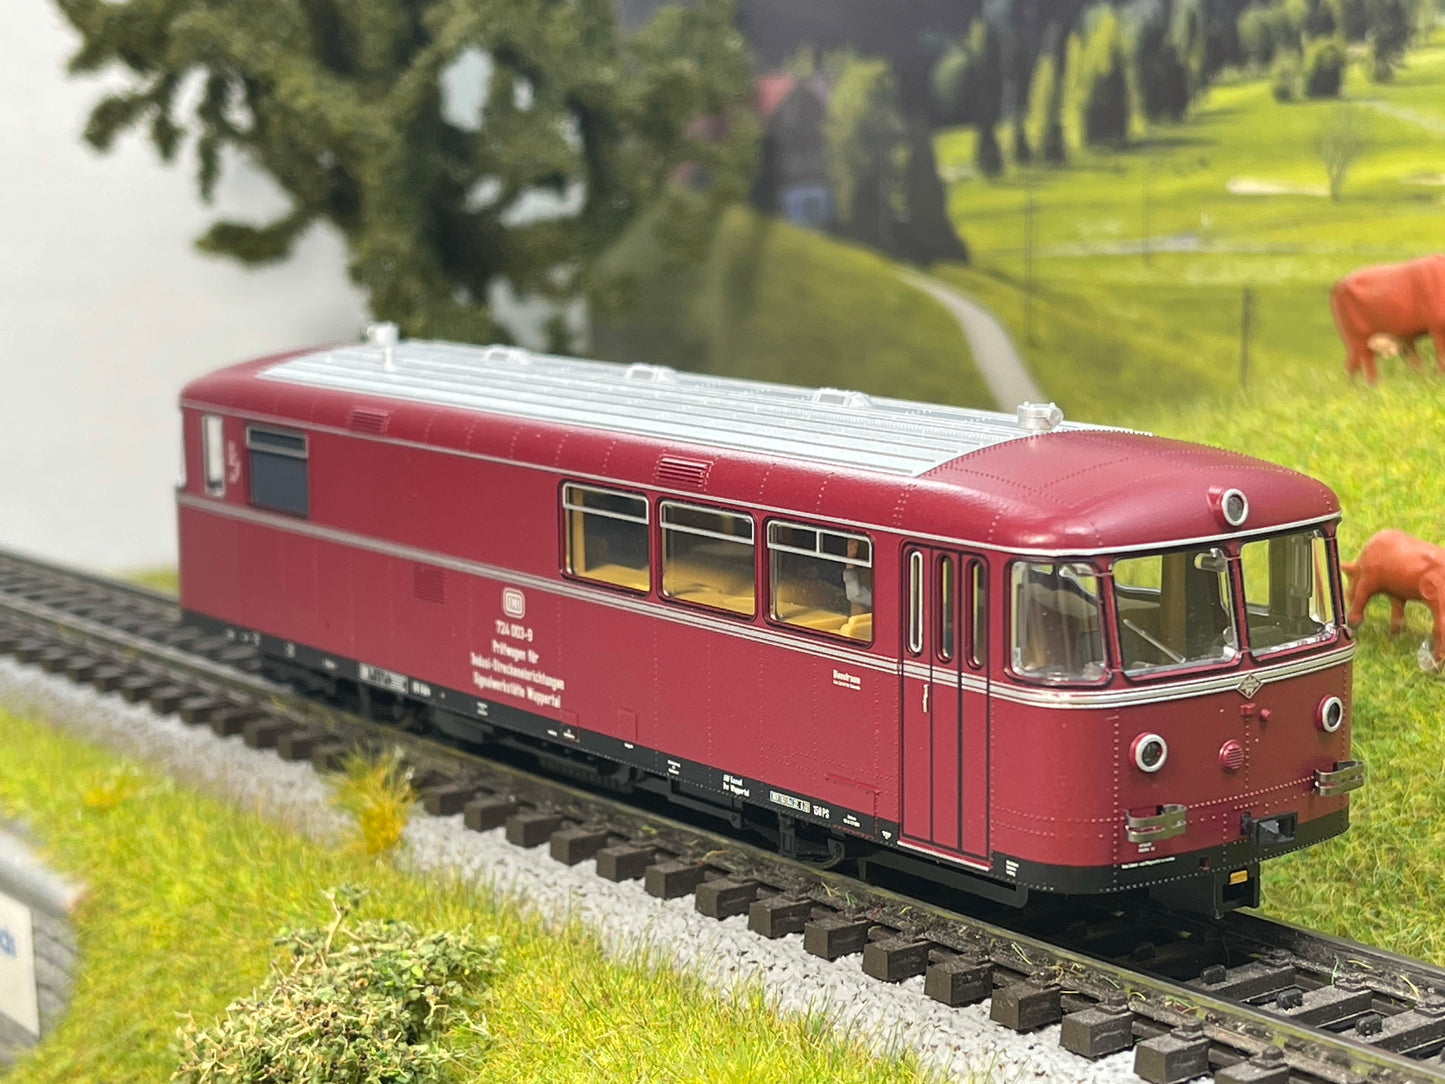 Trix 25958 - Indusi-Messwagen BR 724 (VT 95) Class 724 Powered Rail Car